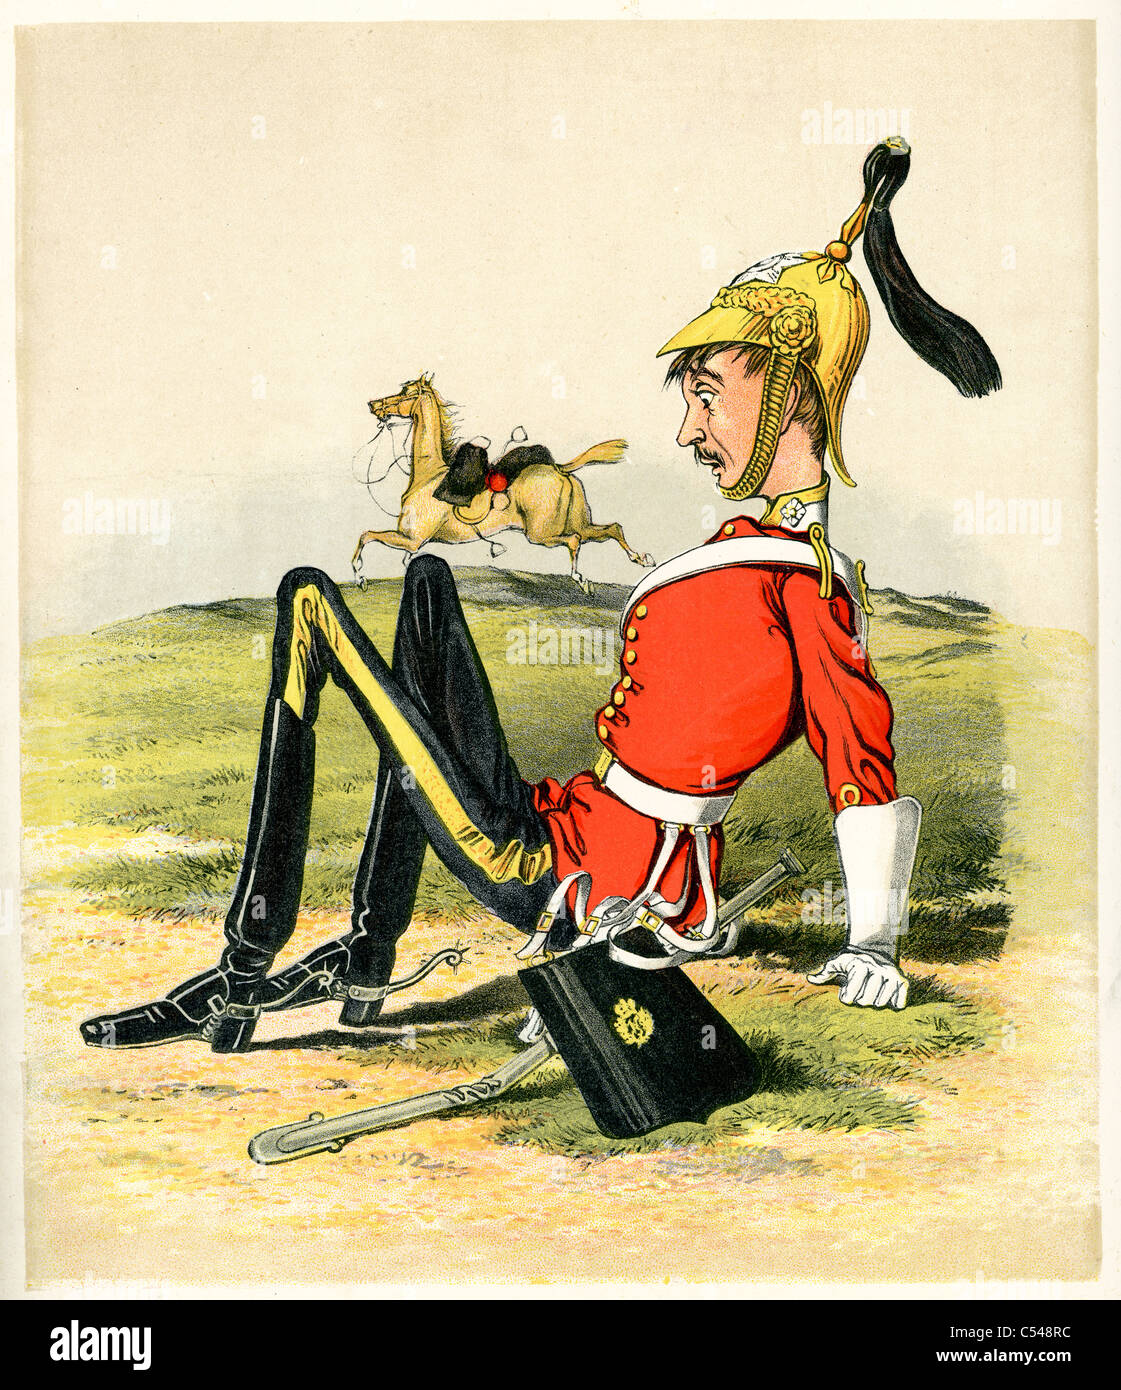 Karikatur von einem jungen britischen Sub Leutnant, der von seinem Pferd gefallen ist Stockfoto